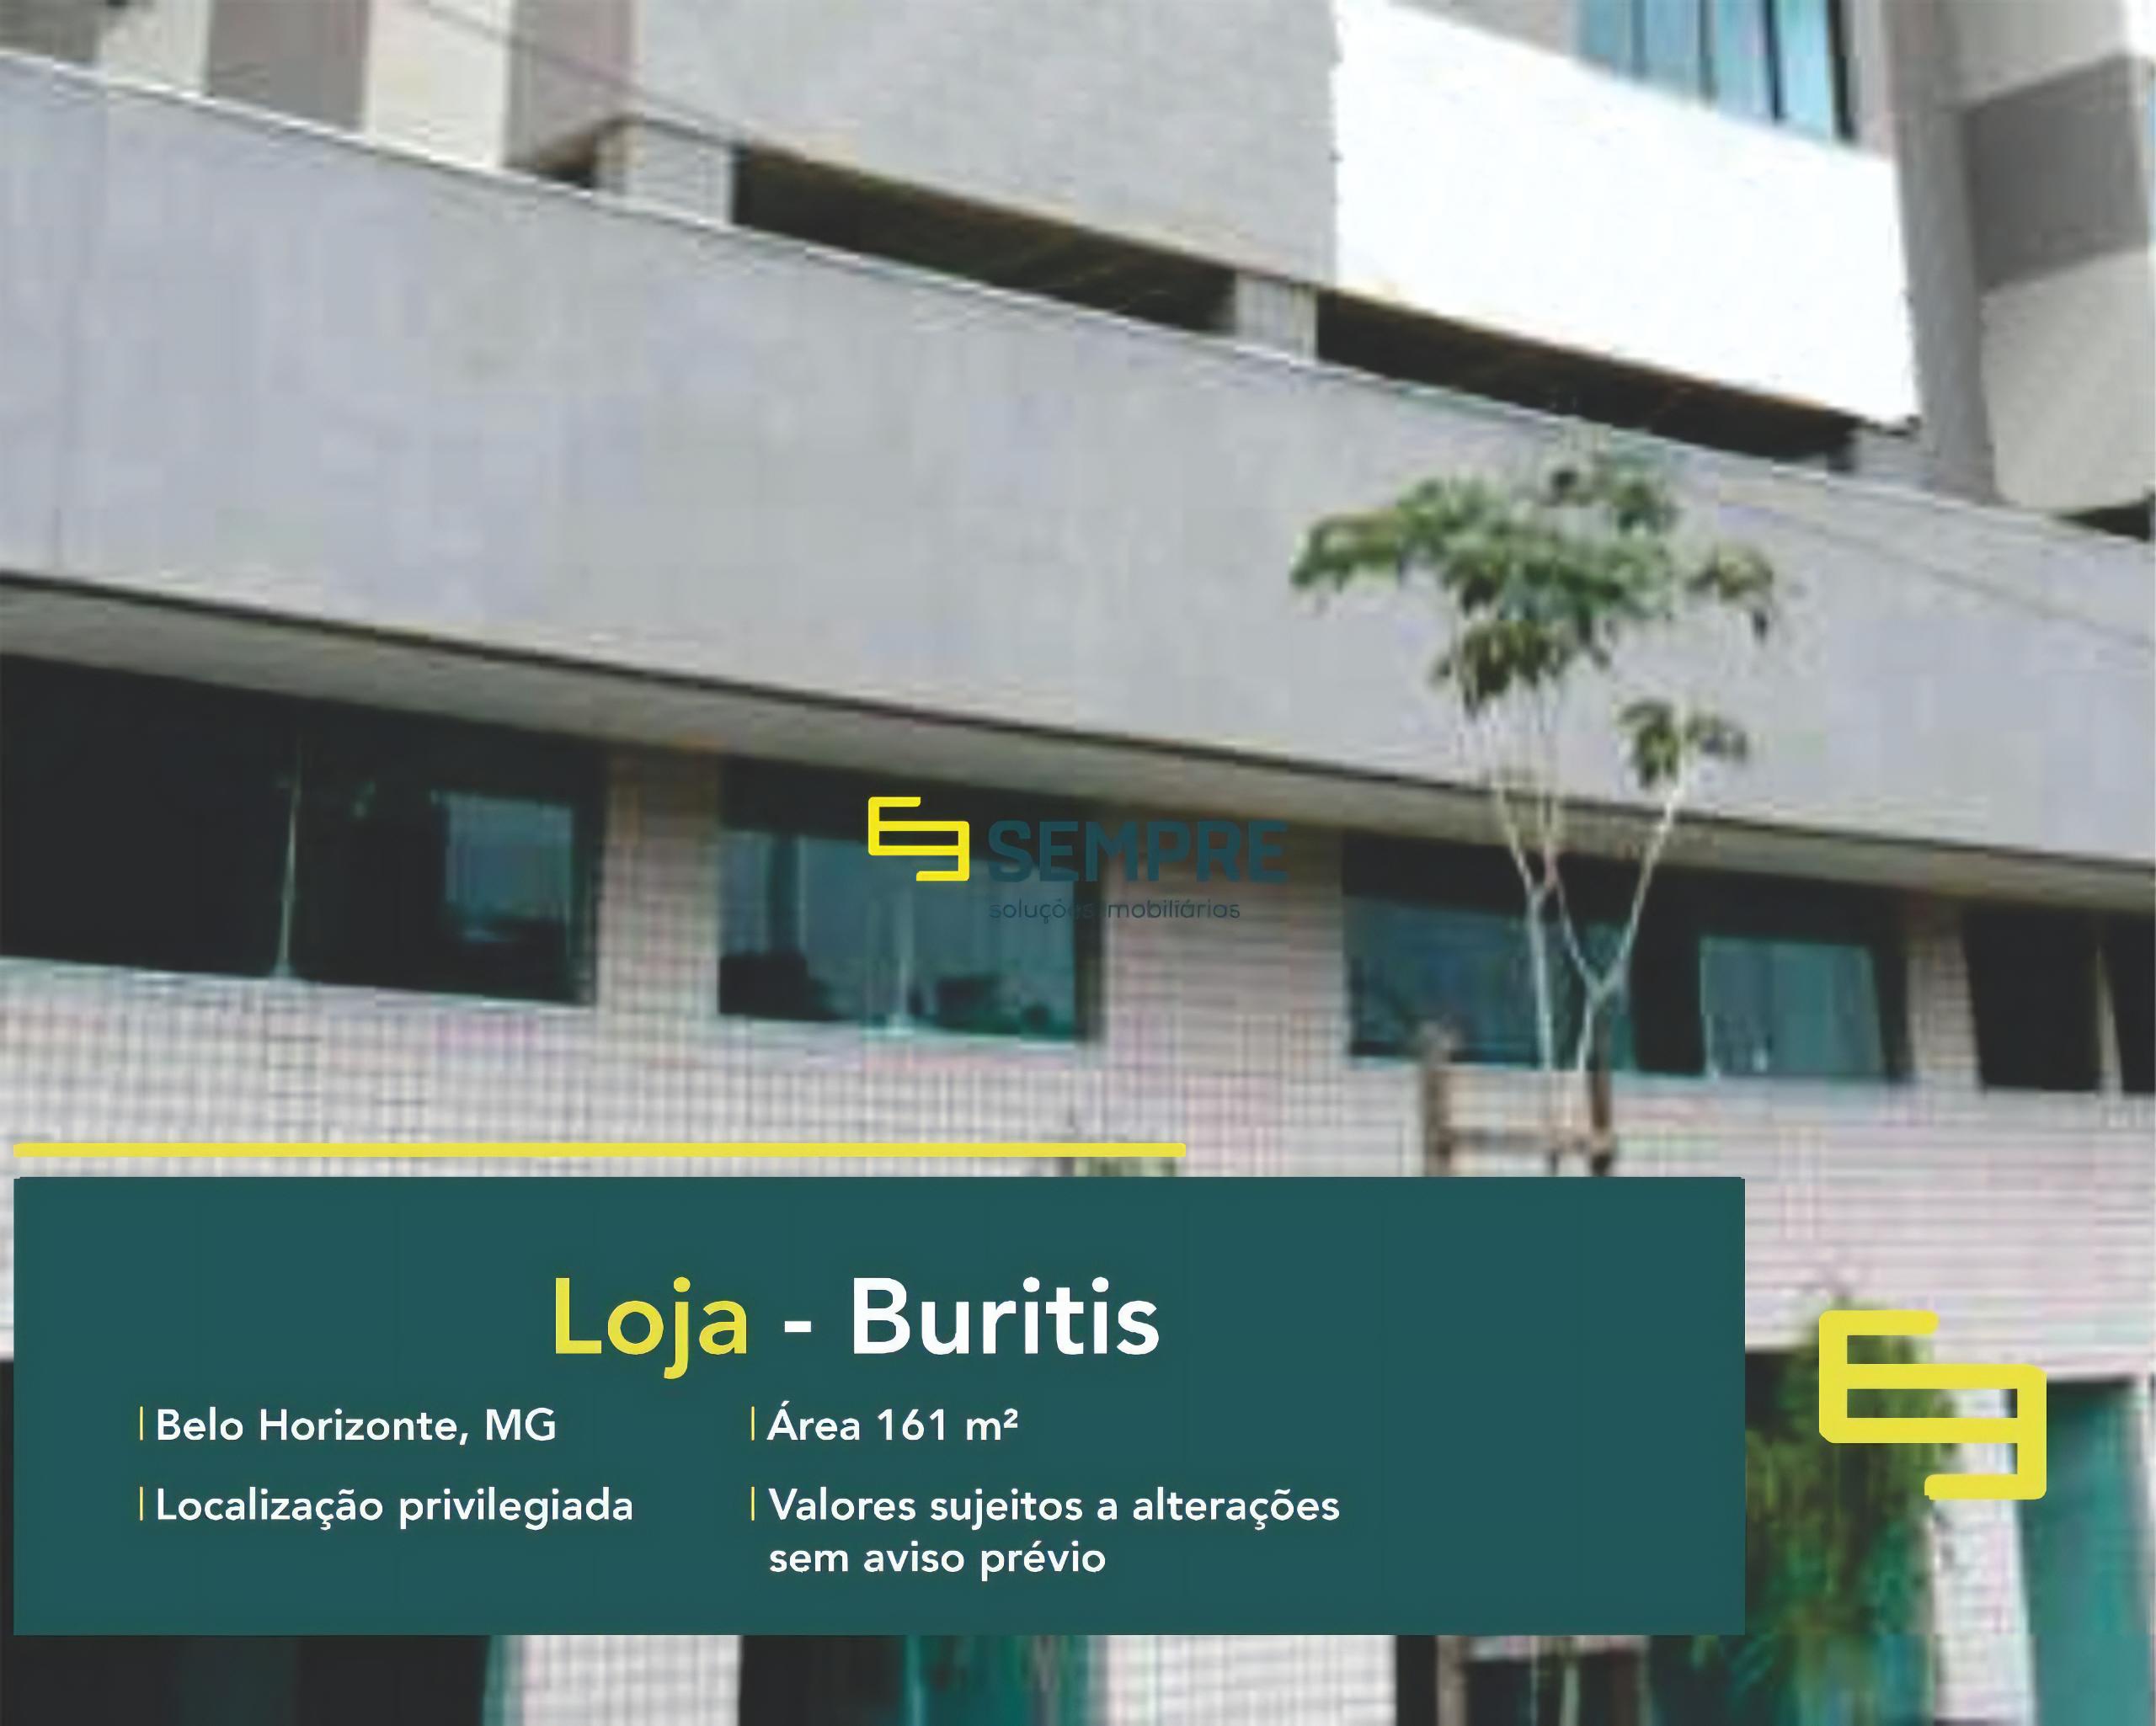 Loja à venda no Buritis em Belo Horizonte, excelente localização. O estabelecimento comercial conta com área de 161,69 m².